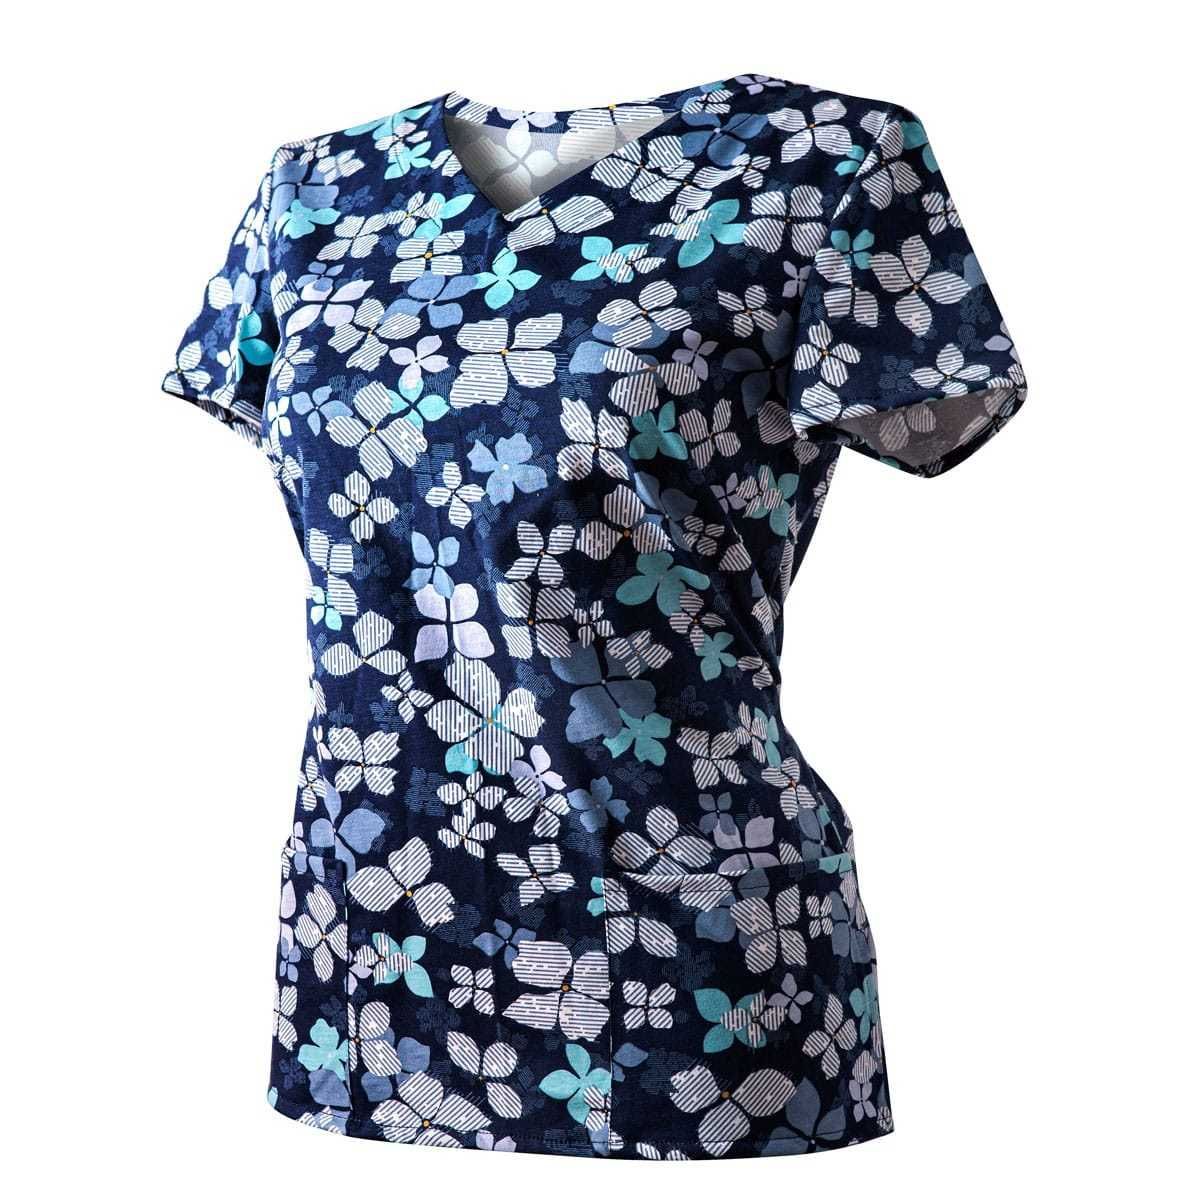 Bluza Medyczna Granatowa Koszulka Bawełniana Kwiaty niebieskie  36 XS